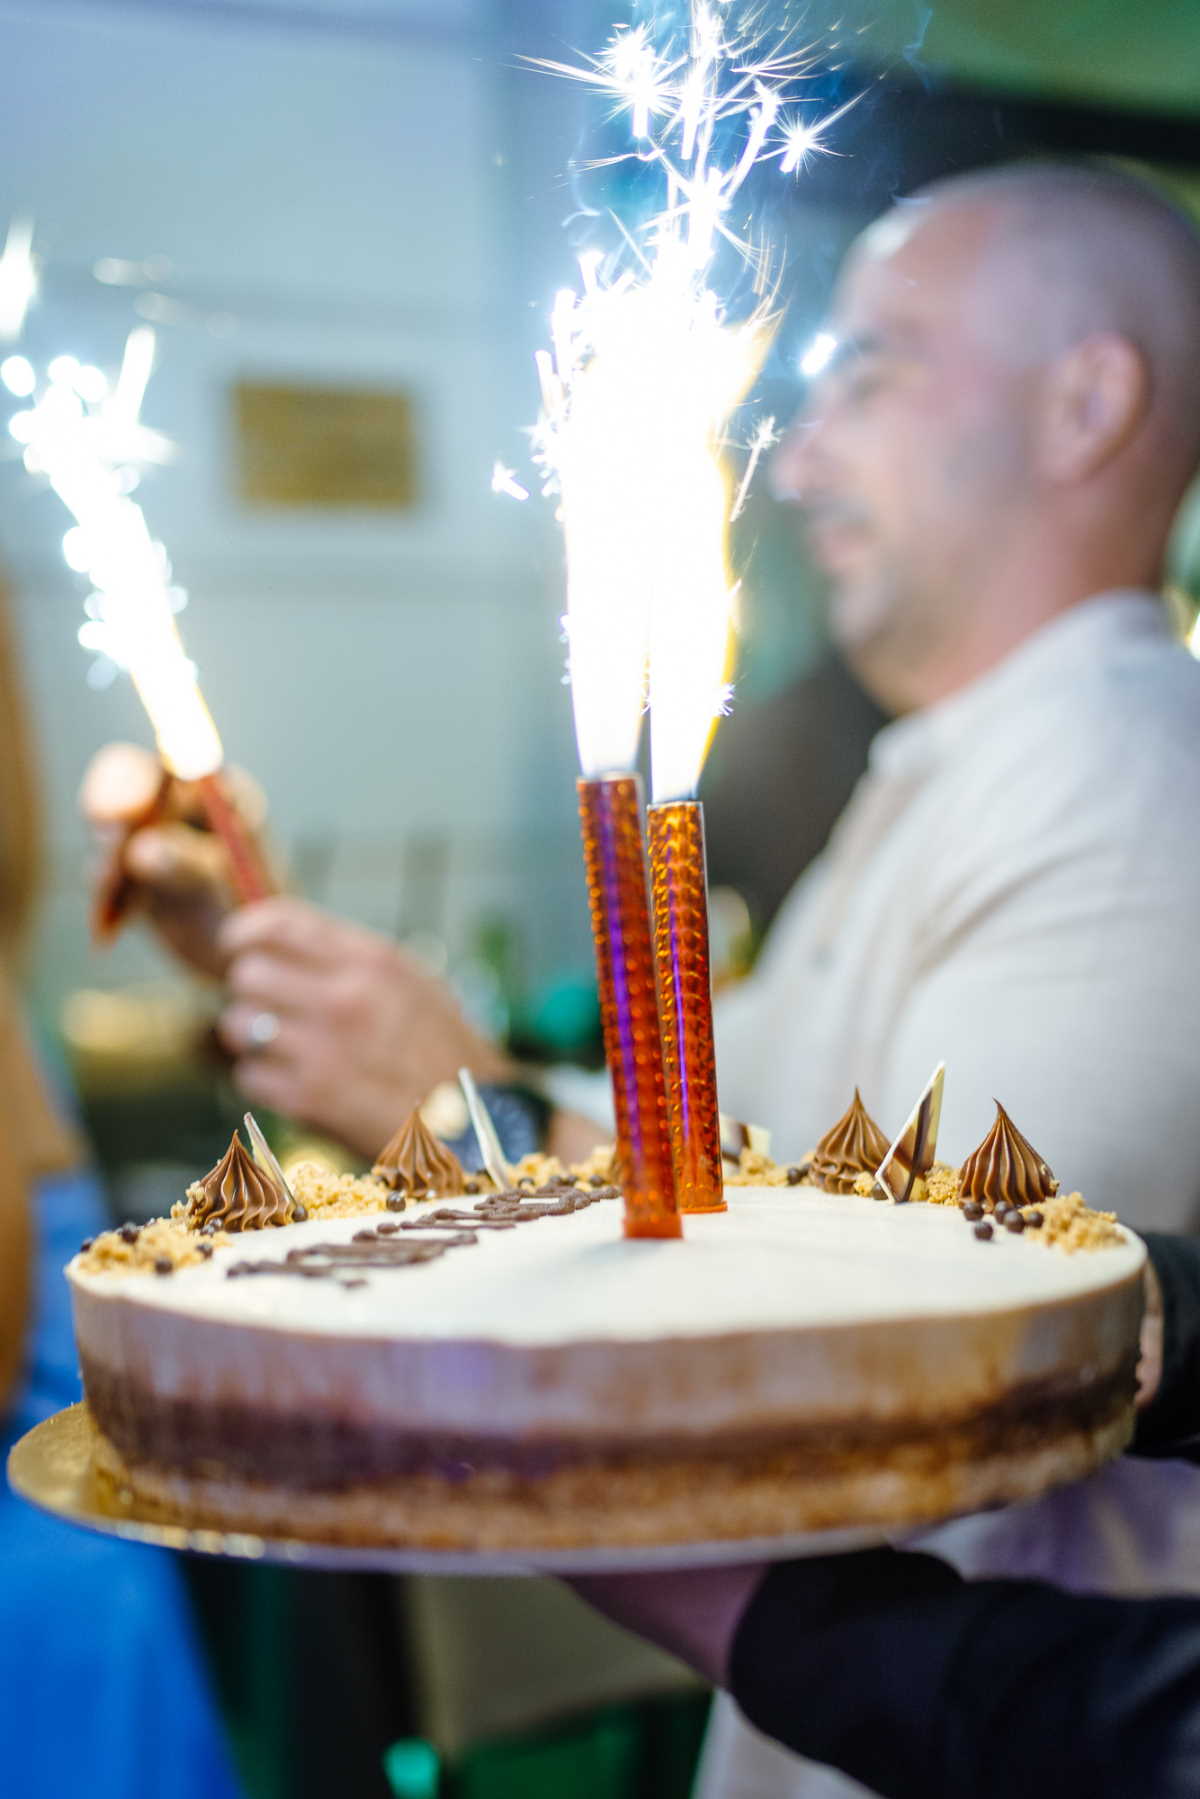 Restoran Antack proslavio 2. rođendan!